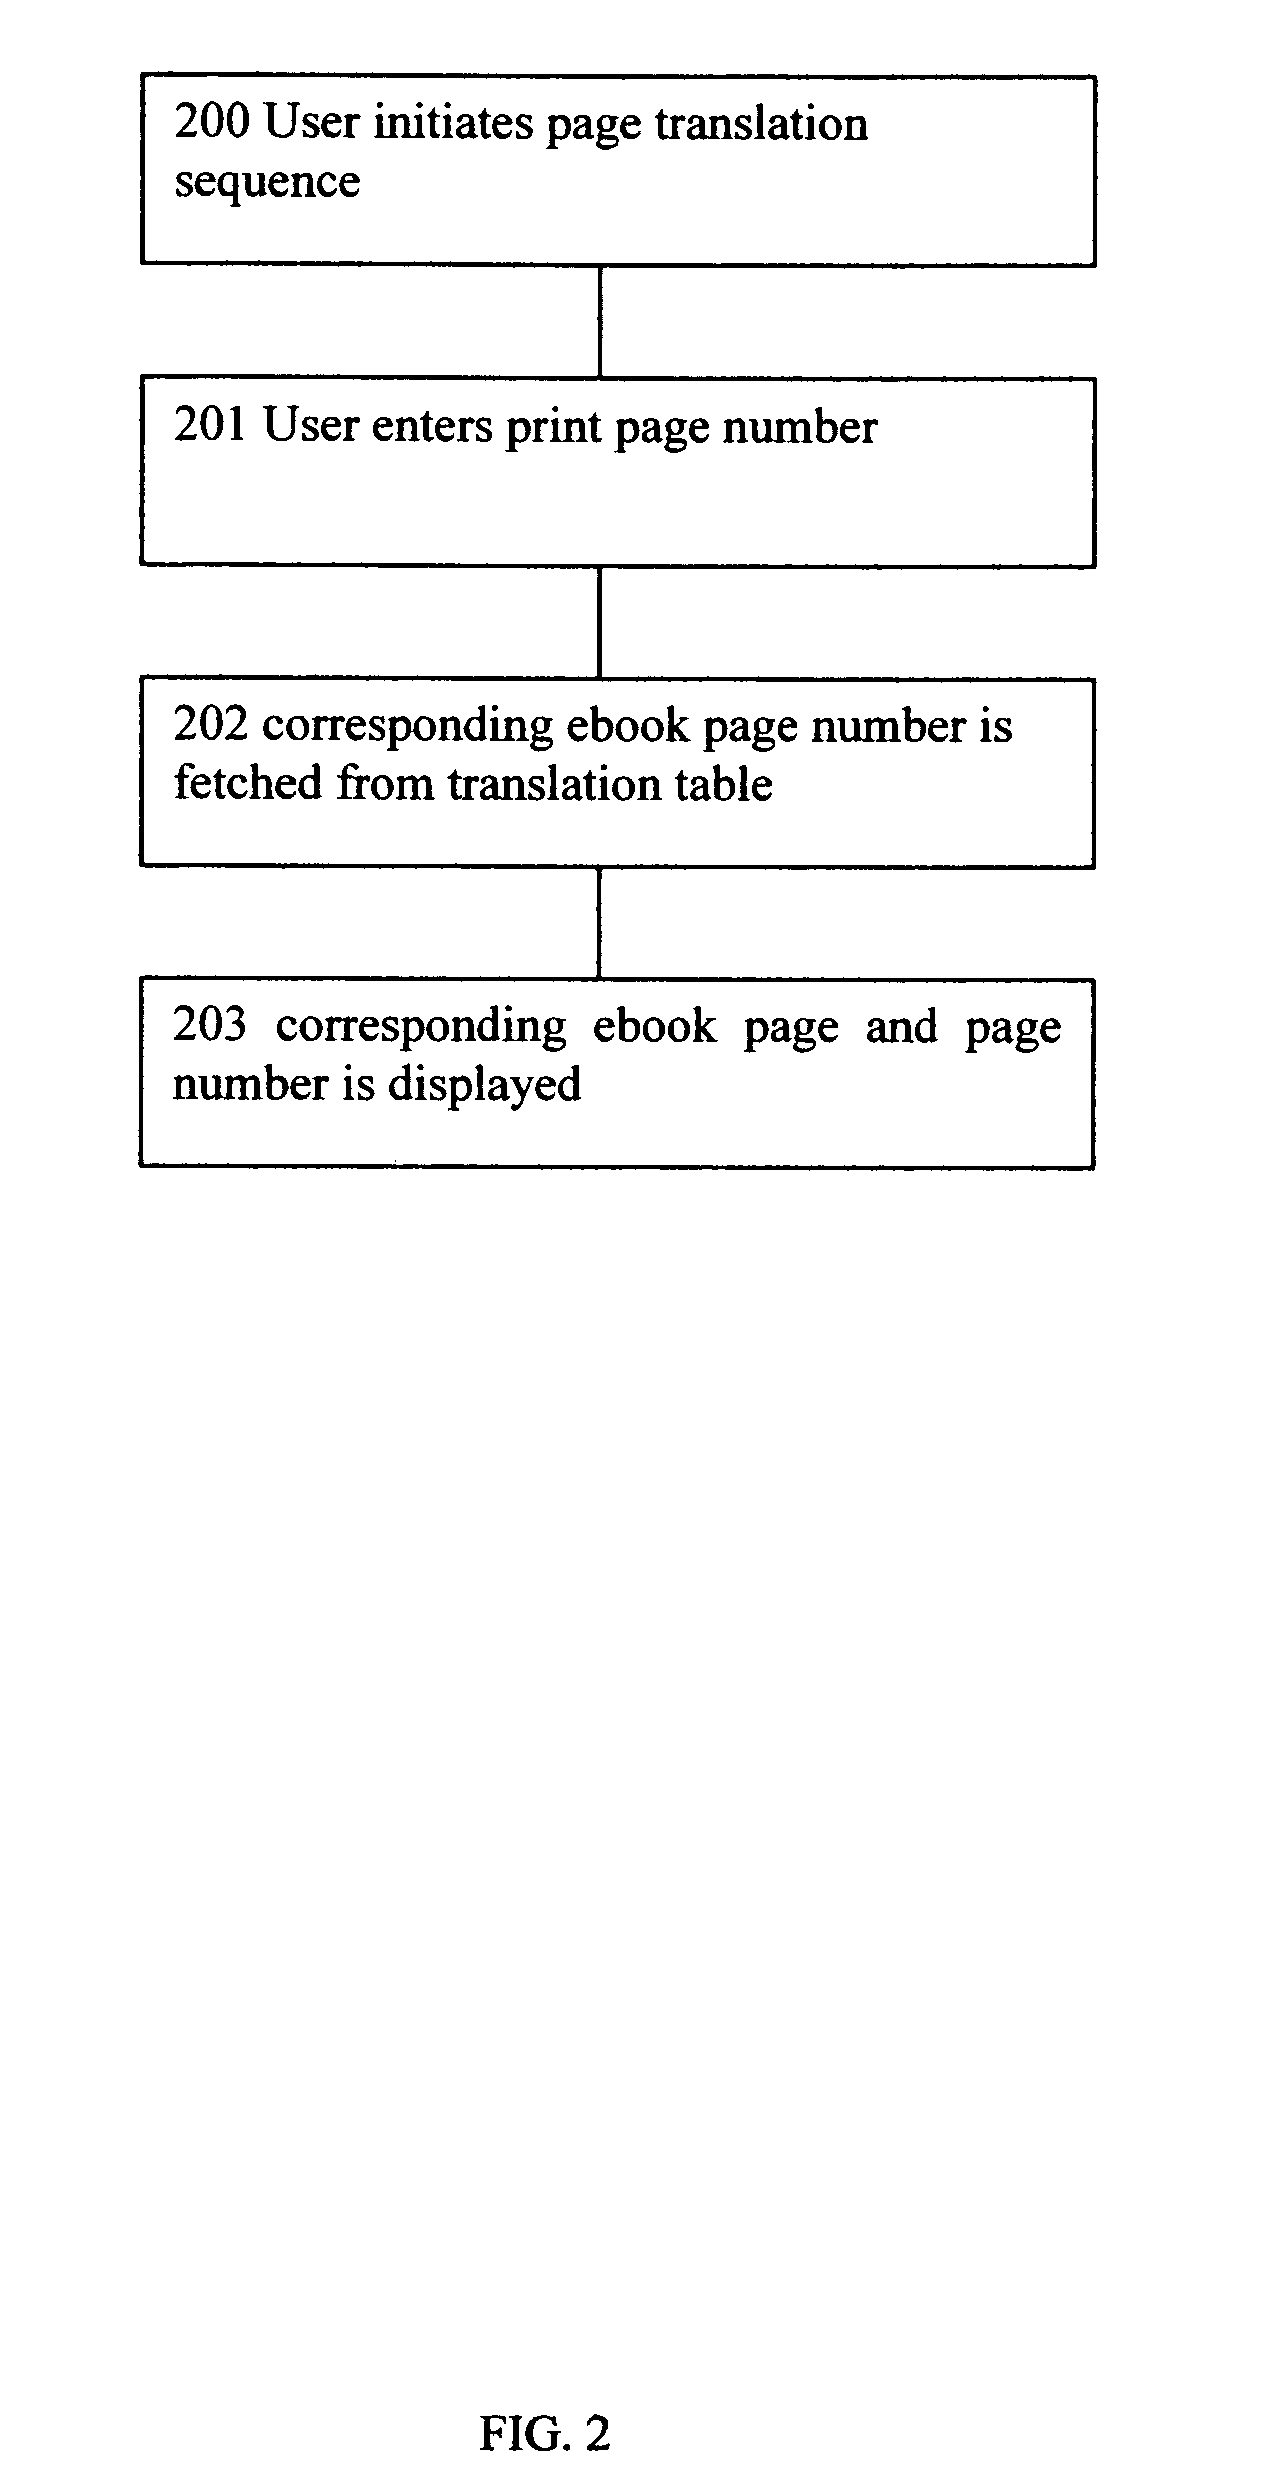 Method for page translation